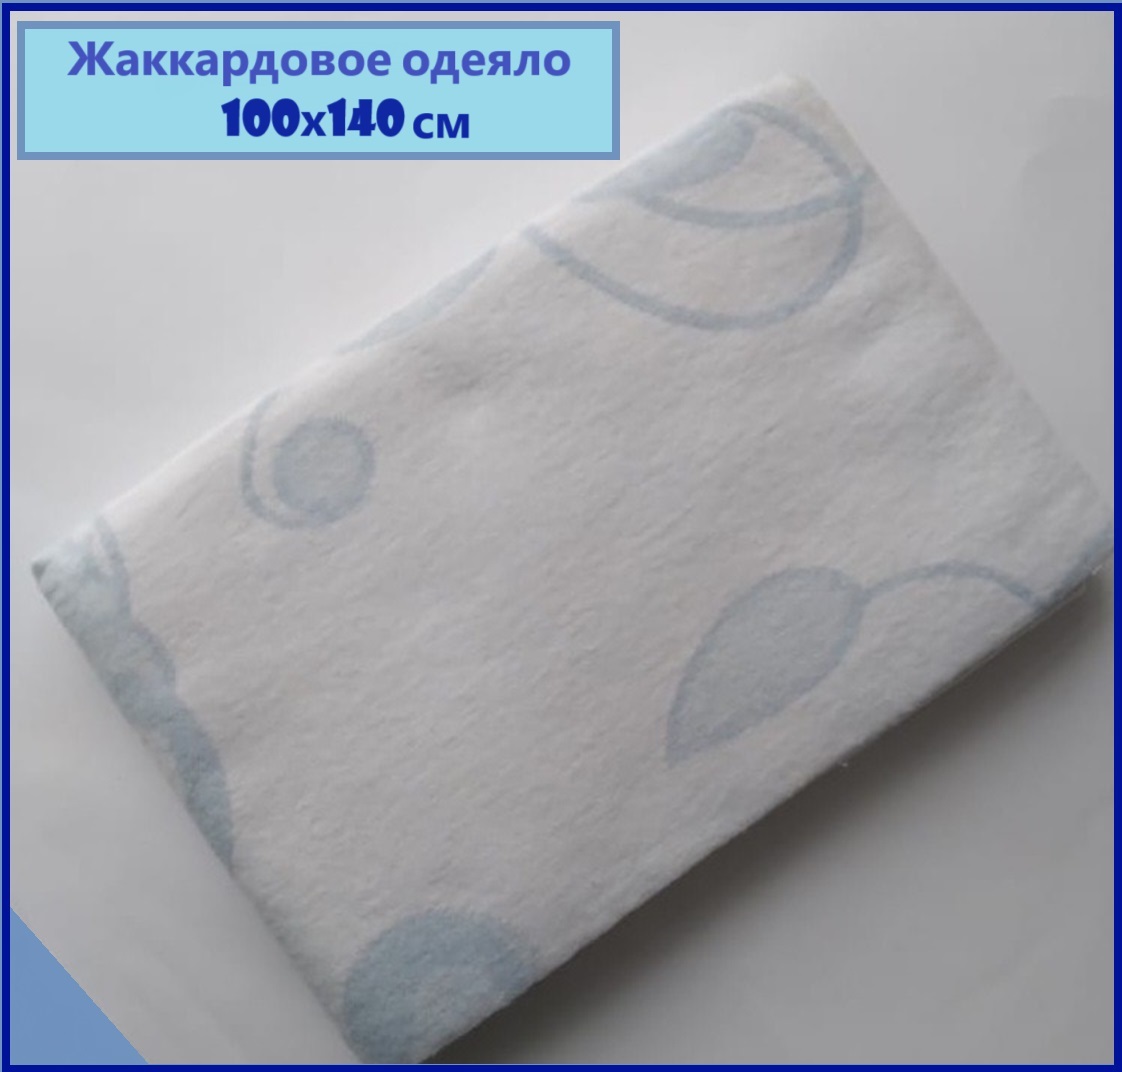 Жаккардовое детское одеяло Униратов Текс белый-голубой хлопок размер 100х140 одеяло детское тексторг байковое 100х140 см обз 20 розовый